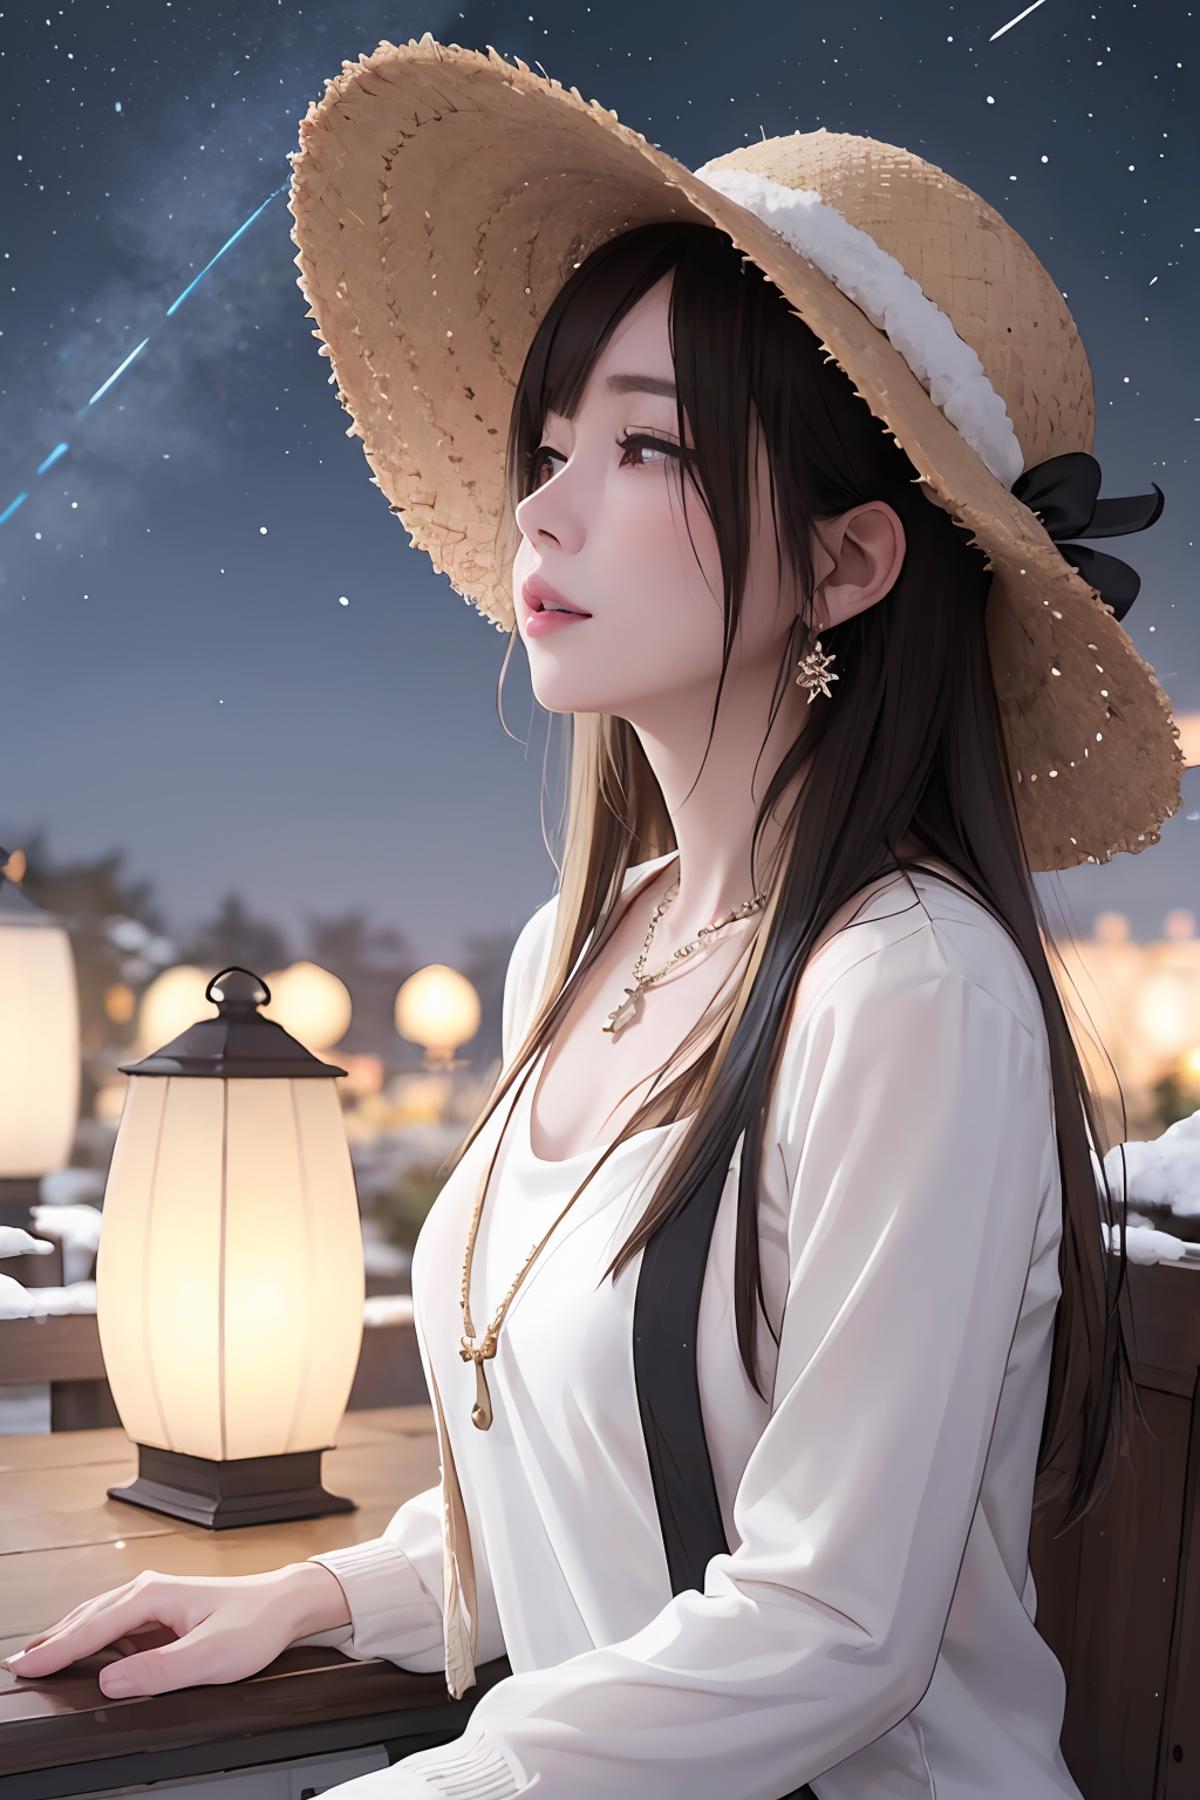 小草帽不只是小草帽_Small straw hat image by fuaneng